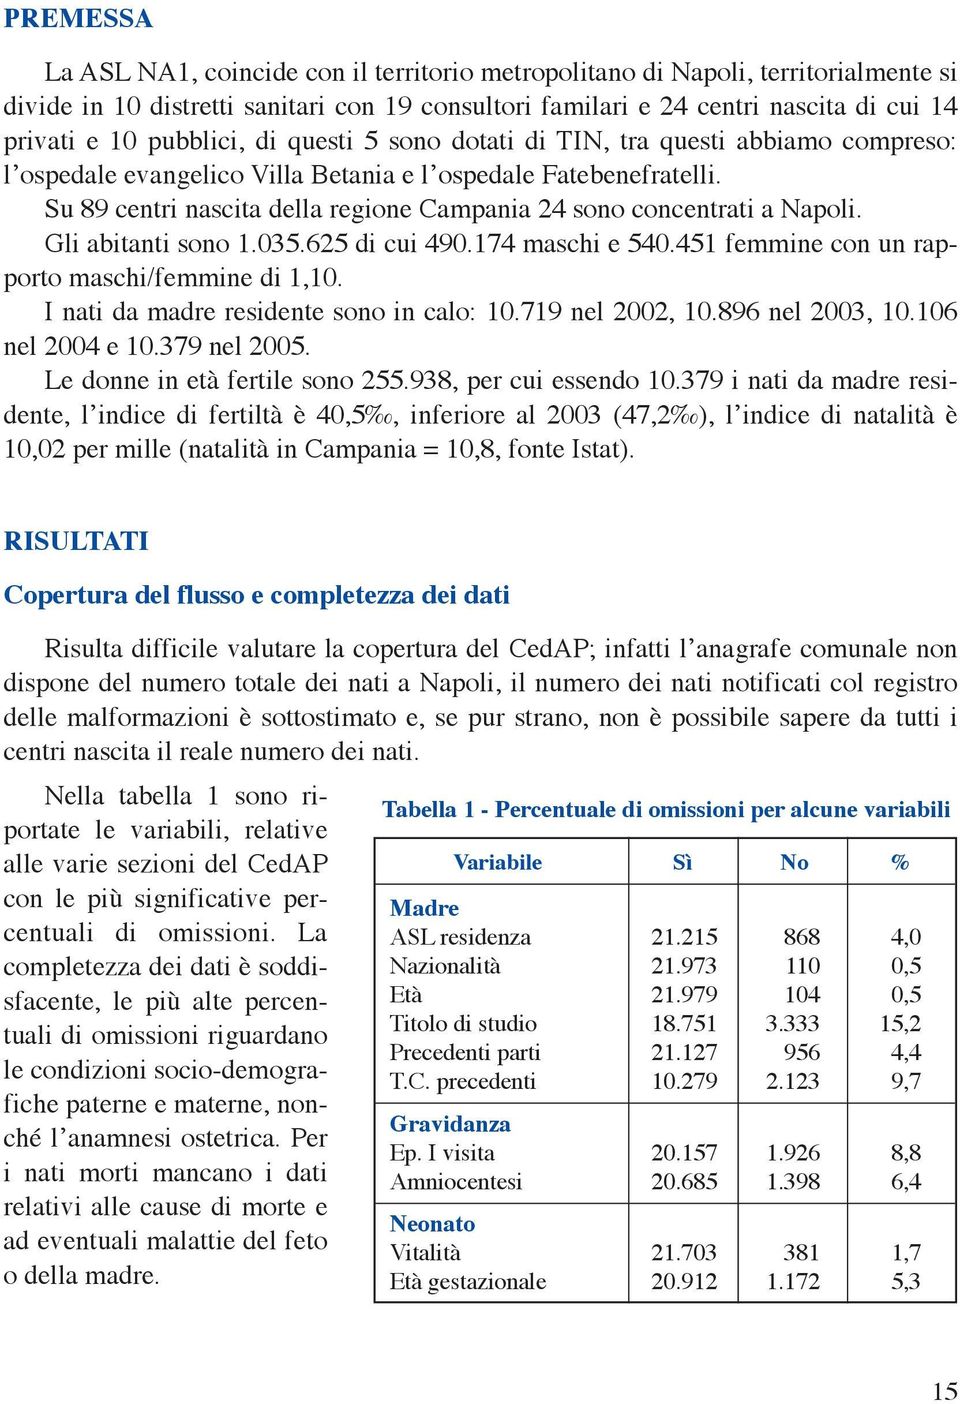 Su 89 centri nascita della regione Campania 24 sono concentrati a Napoli. Gli abitanti sono 1.035.625 di cui 490.174 maschi e 540.451 femmine con un rapporto maschi/femmine di 1,10.